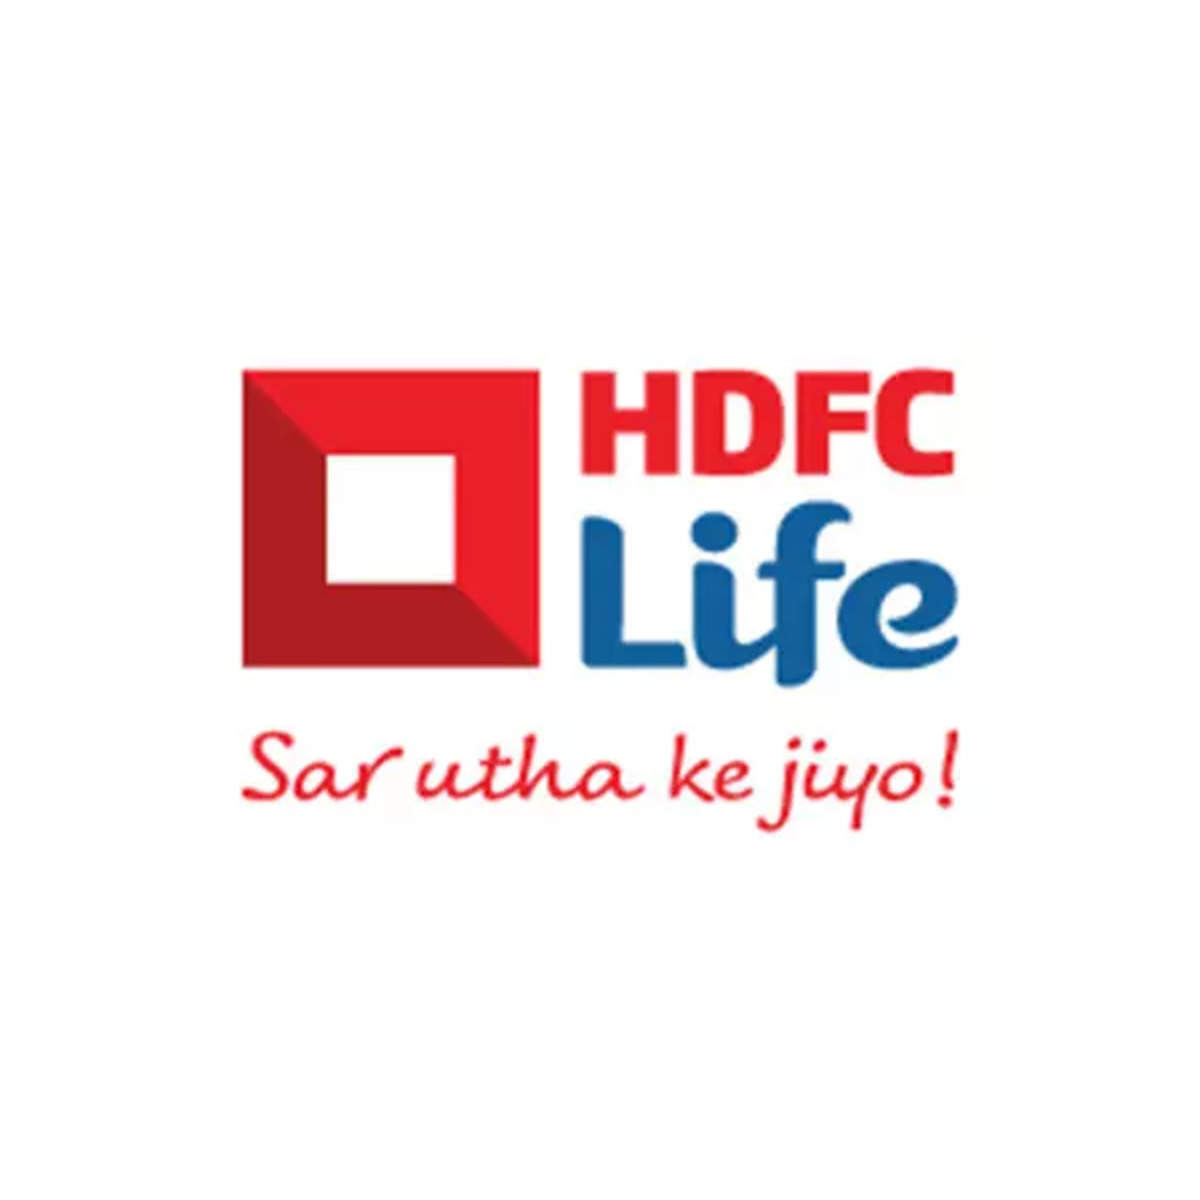 HDFC Bank Statement - Format, View, Download, Benefits - Paisabazaar